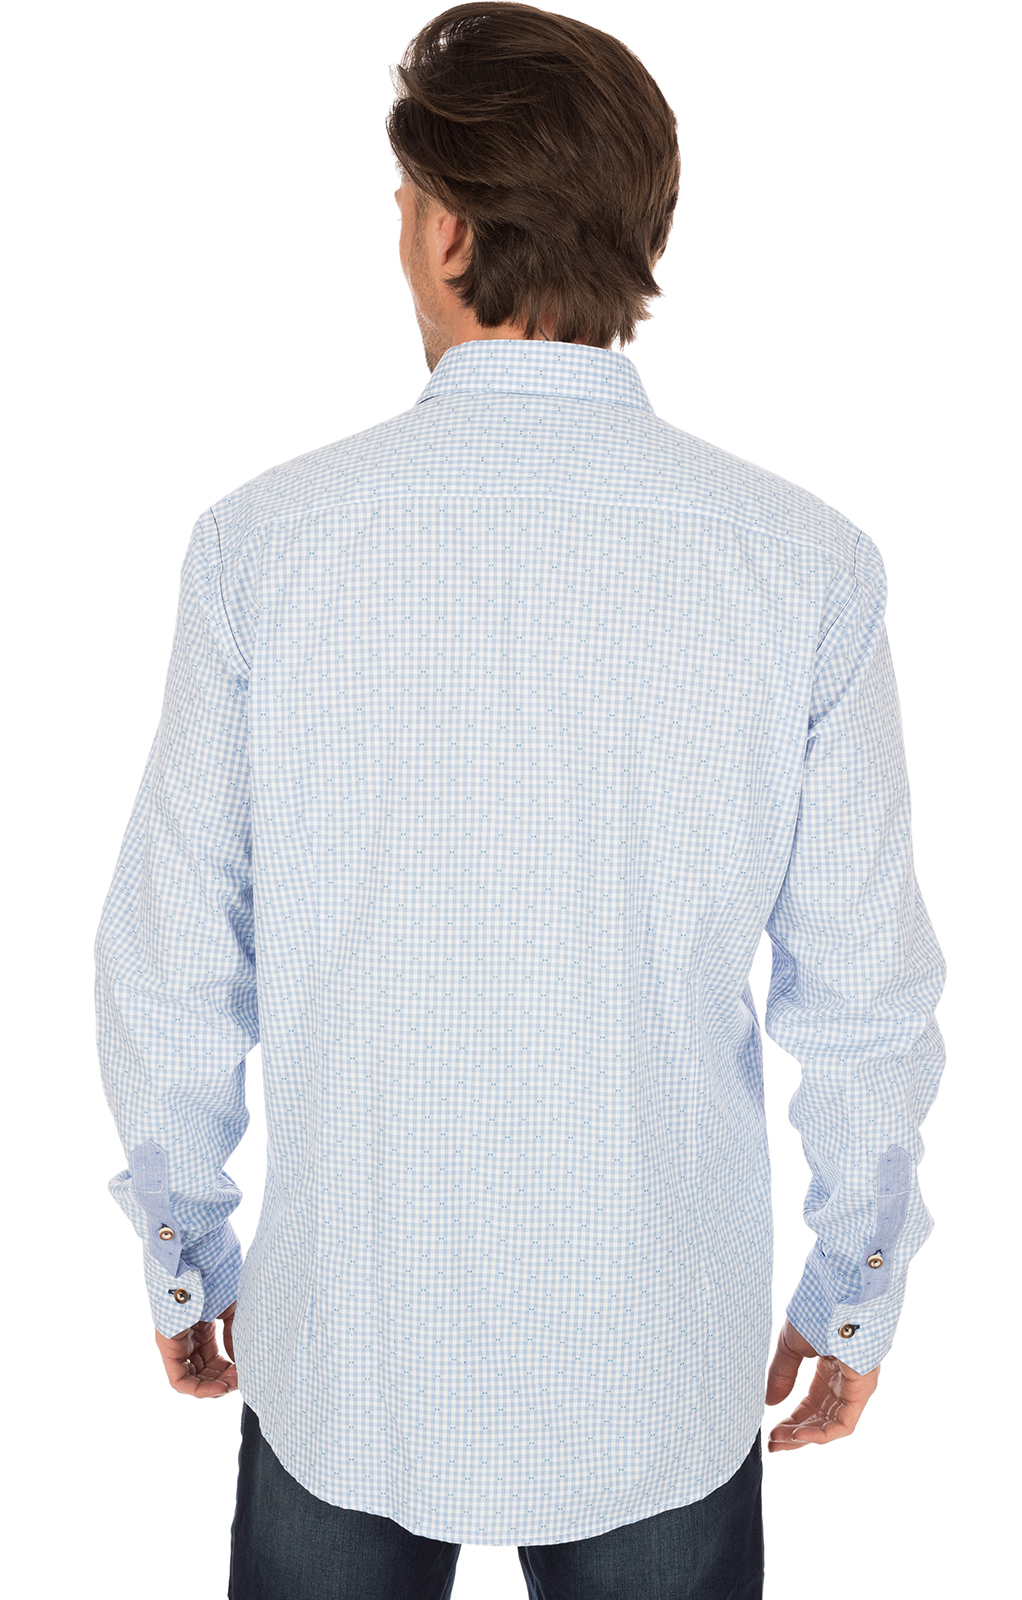 weitere Bilder von German traditional shirt long sleeve blue